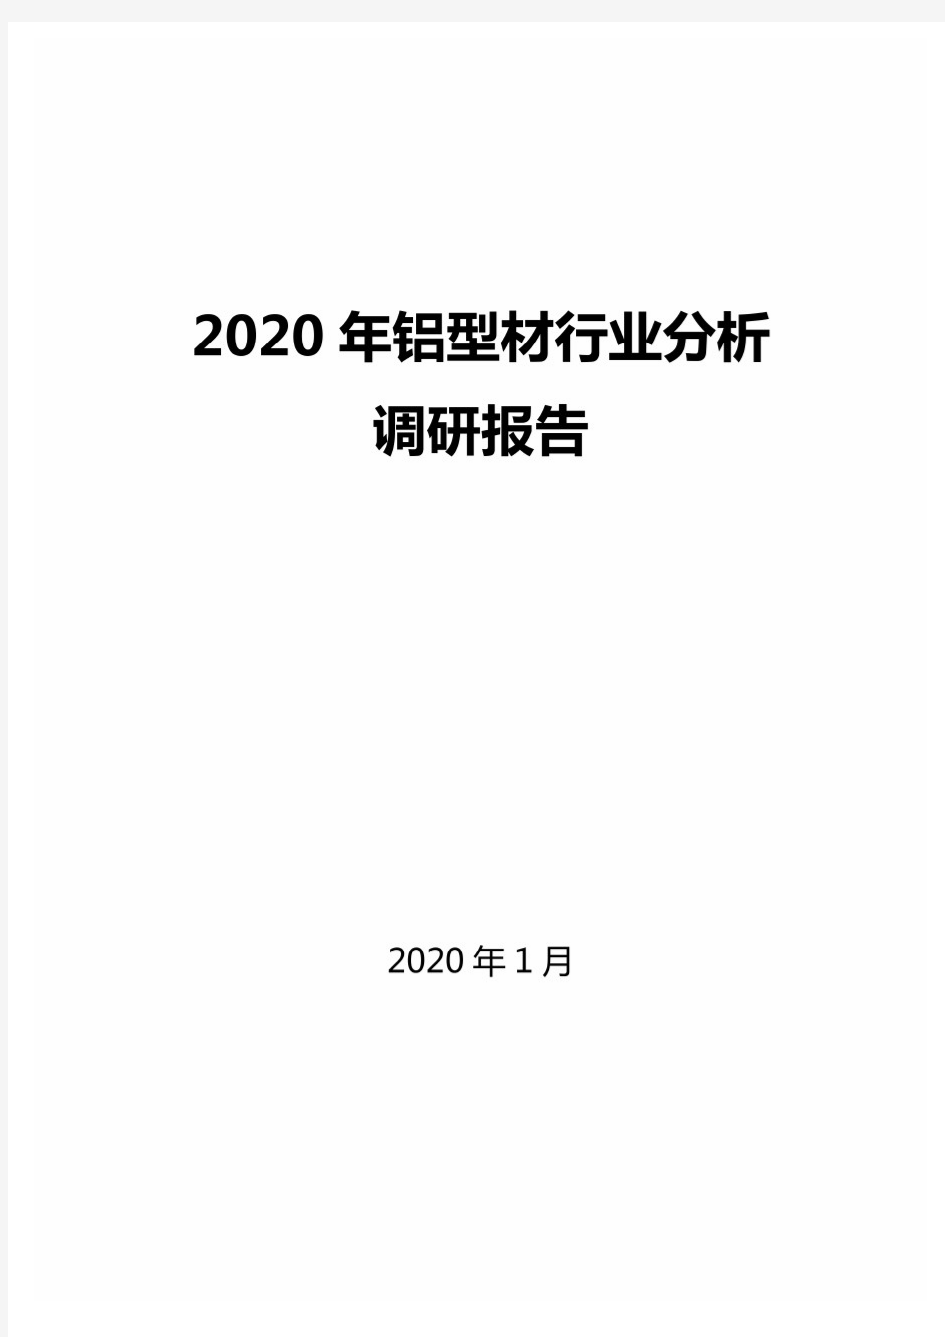 2020年铝型材行业分析调研报告